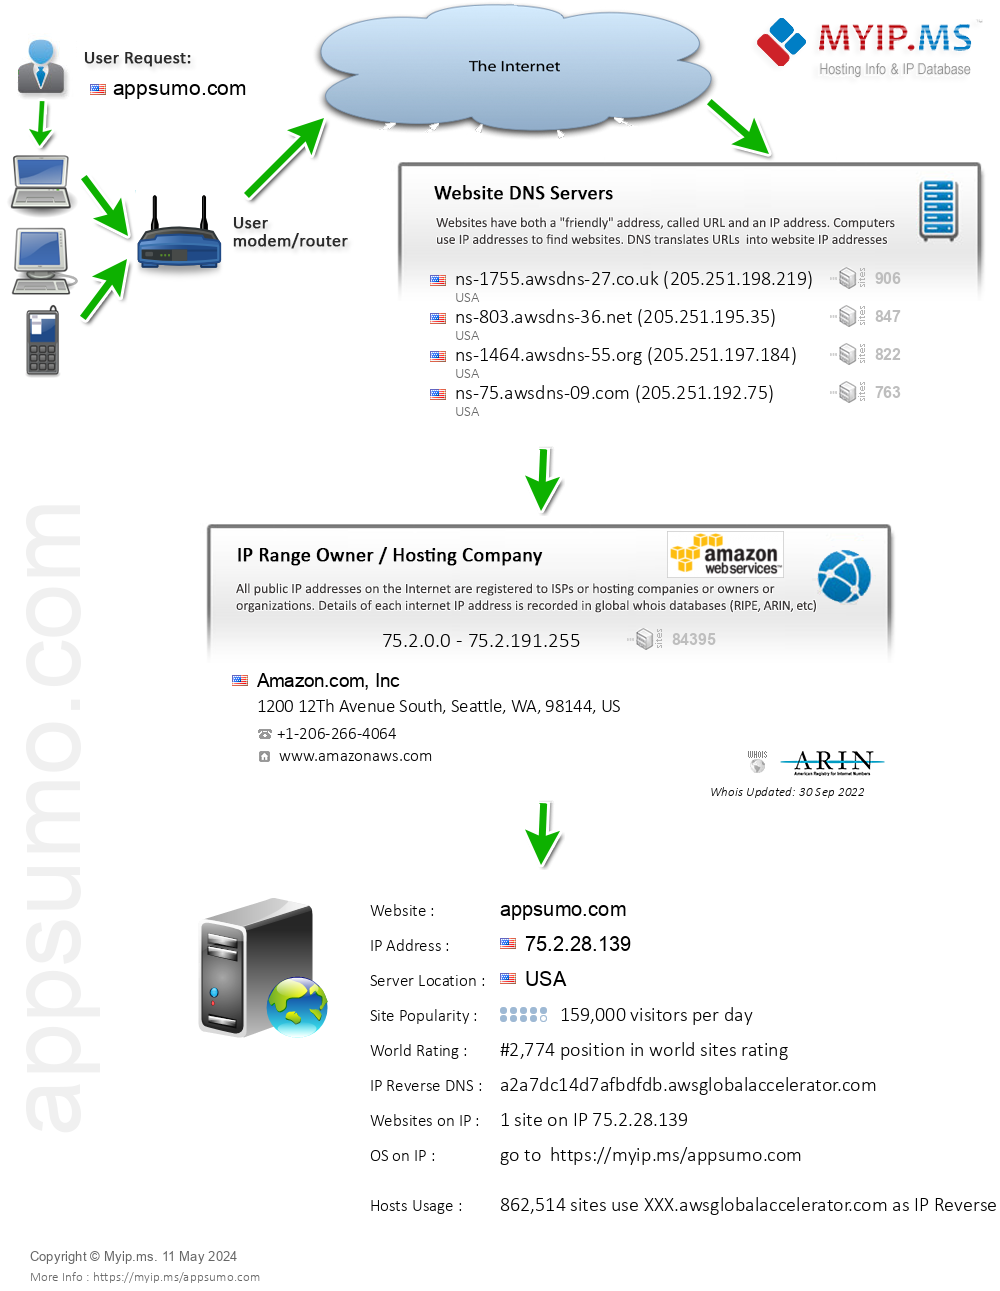 Appsumo.com - Website Hosting Visual IP Diagram